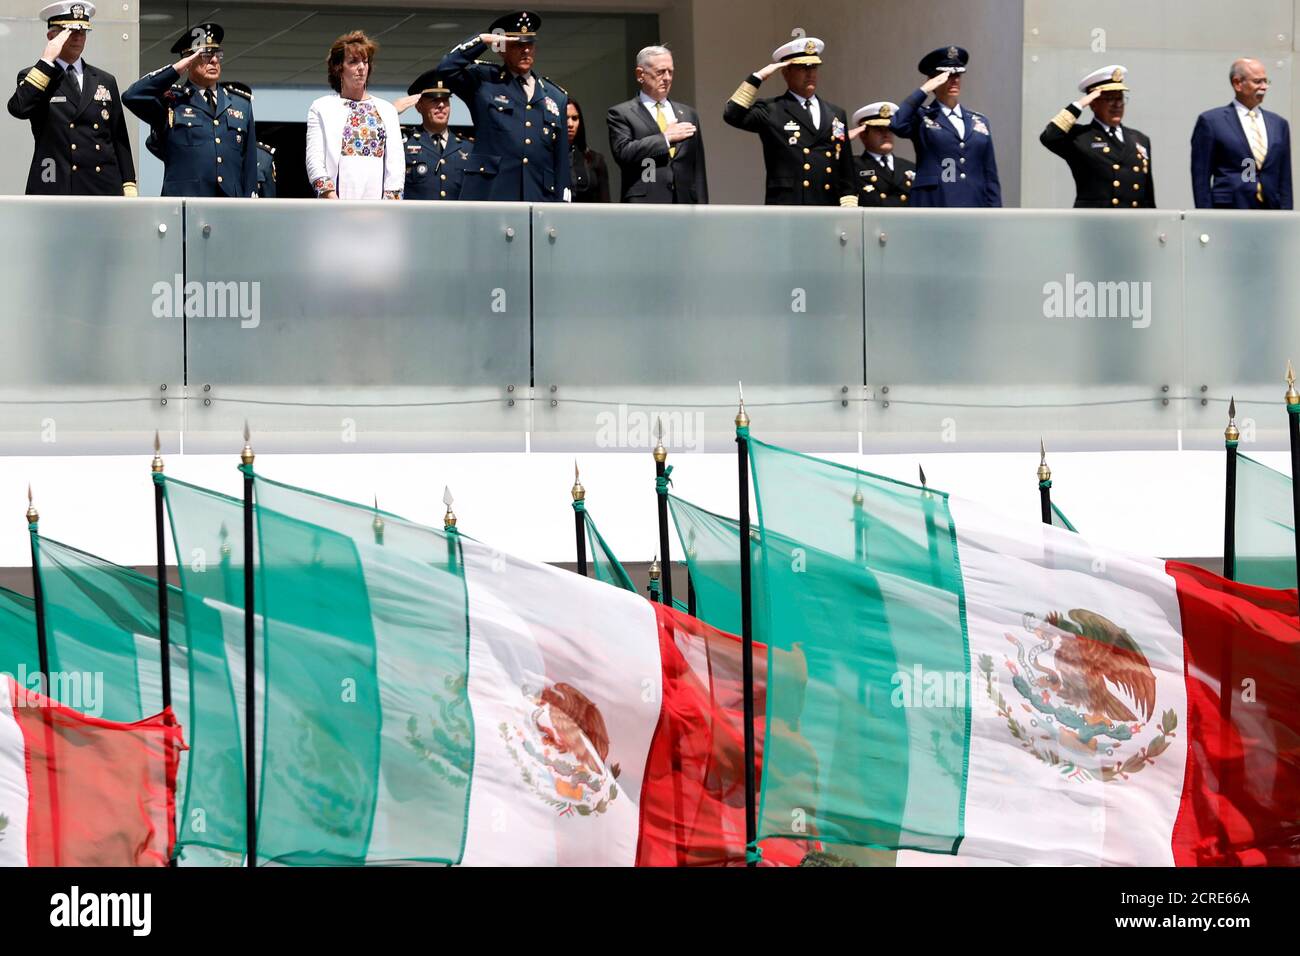 US-Verteidigungsminister James Mattis begrüßt die Truppen bei einer Begrüßungszeremonie auf dem Platz Plaza de la Lealtad im Hauptquartier des Sekretärs der Nationalen Verteidigung in Mexiko-Stadt, Mexiko, am 15. September 2017. REUTERS/Edgard Garrido Stockfoto